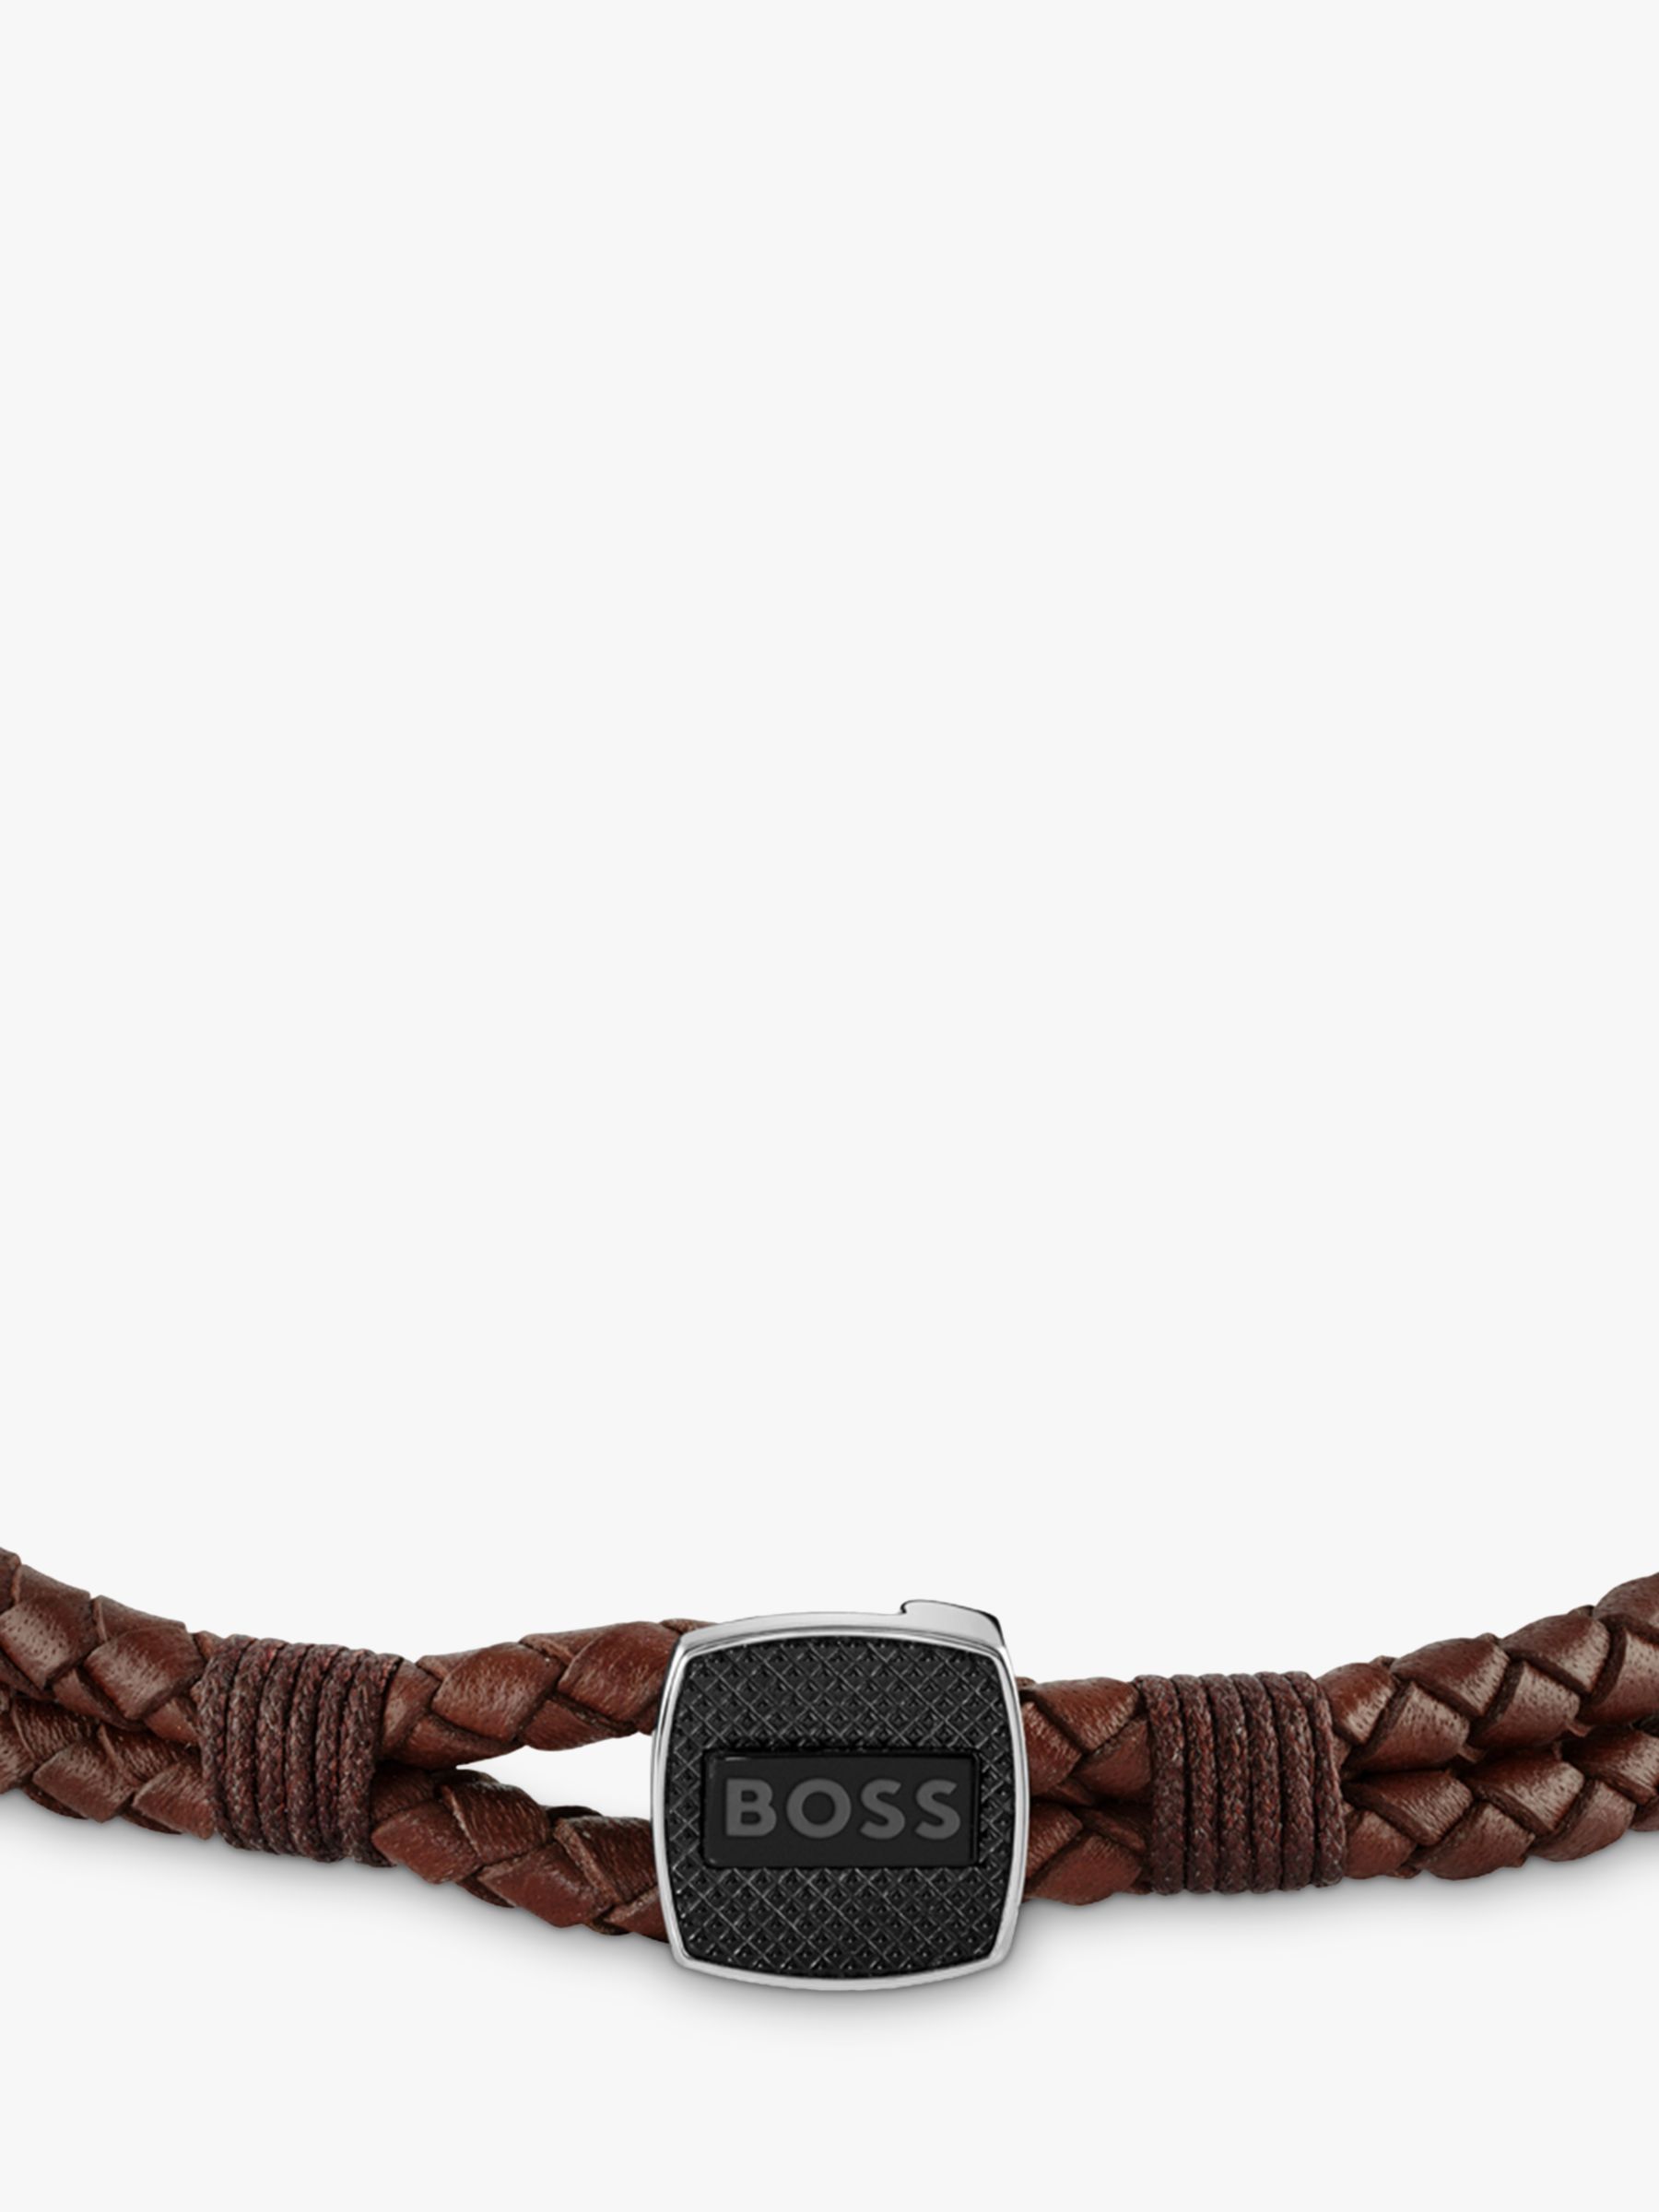 Buy BOSS Men's Braided Leather Bracelet Online at johnlewis.com